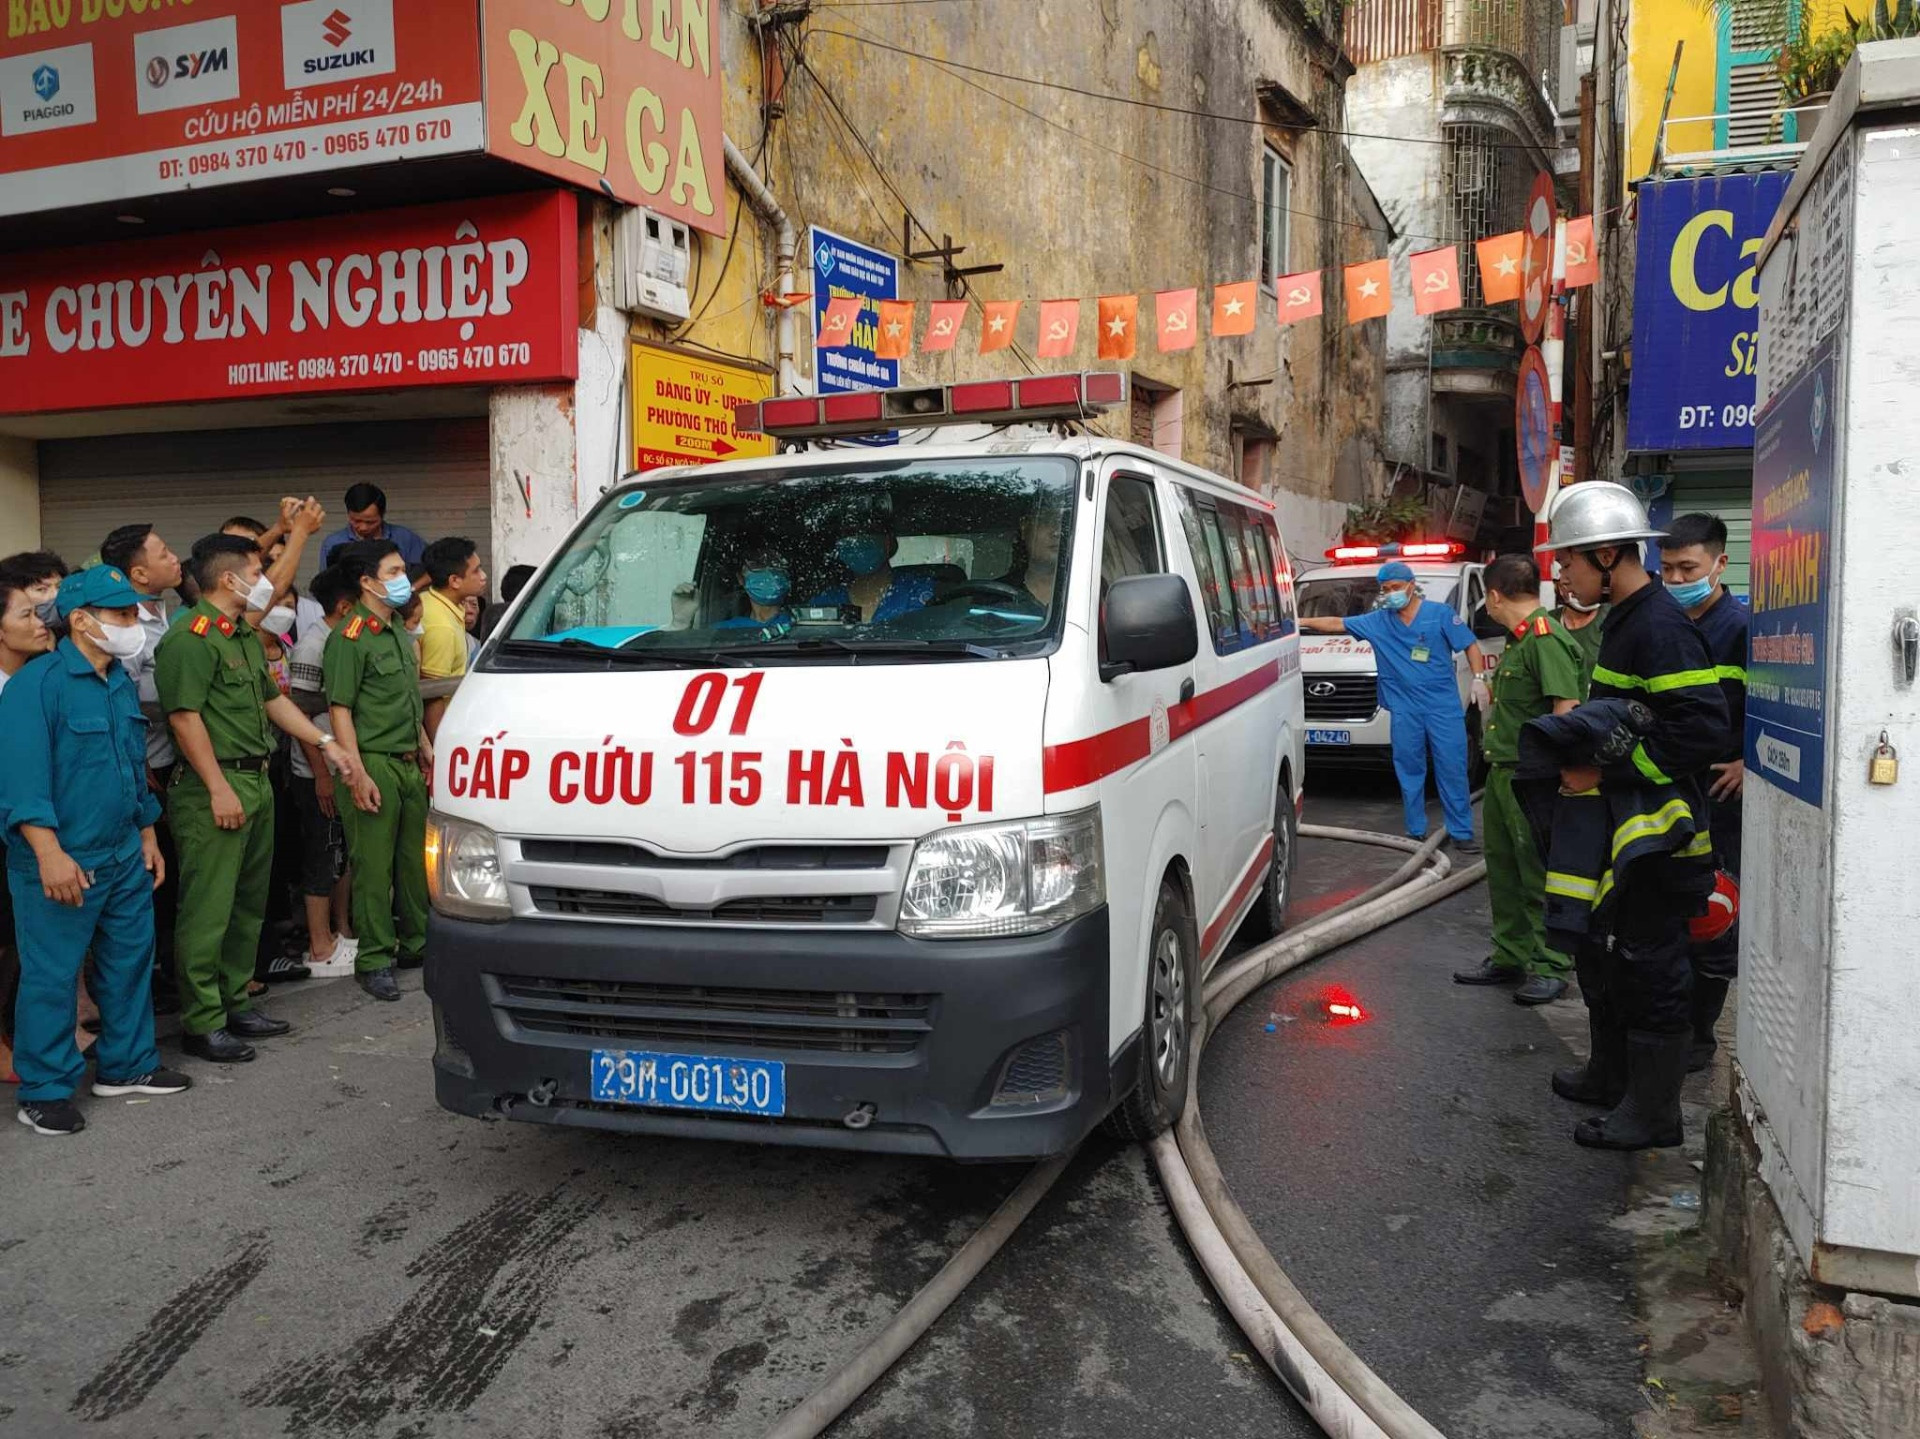 Hiện trường vụ cháy nhà, 3 người chết ở Hà Nội - 5